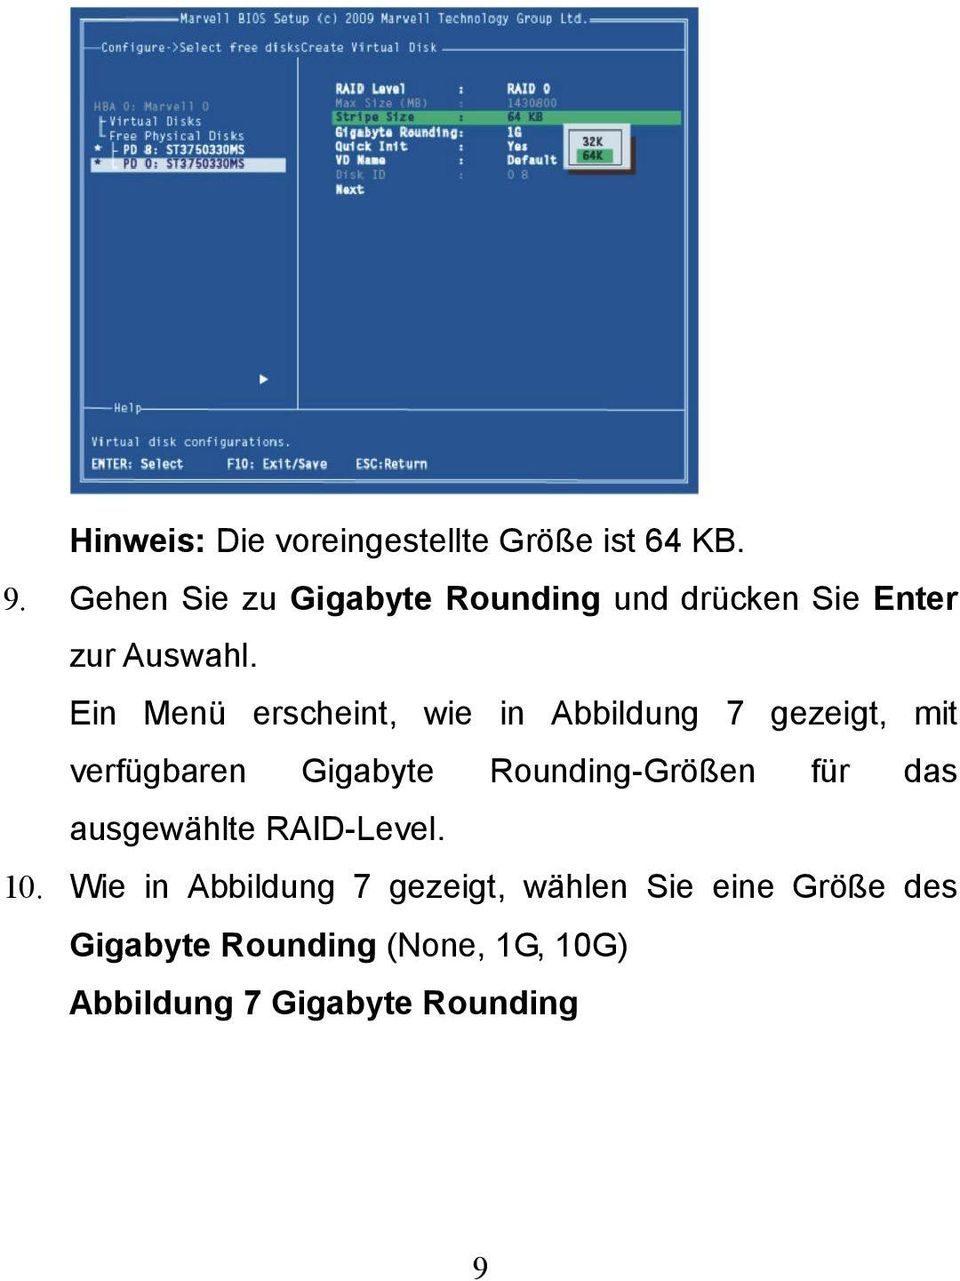 Ein Menü erscheint, wie in Abbildung 7 gezeigt, mit verfügbaren Gigabyte Rounding-Größen